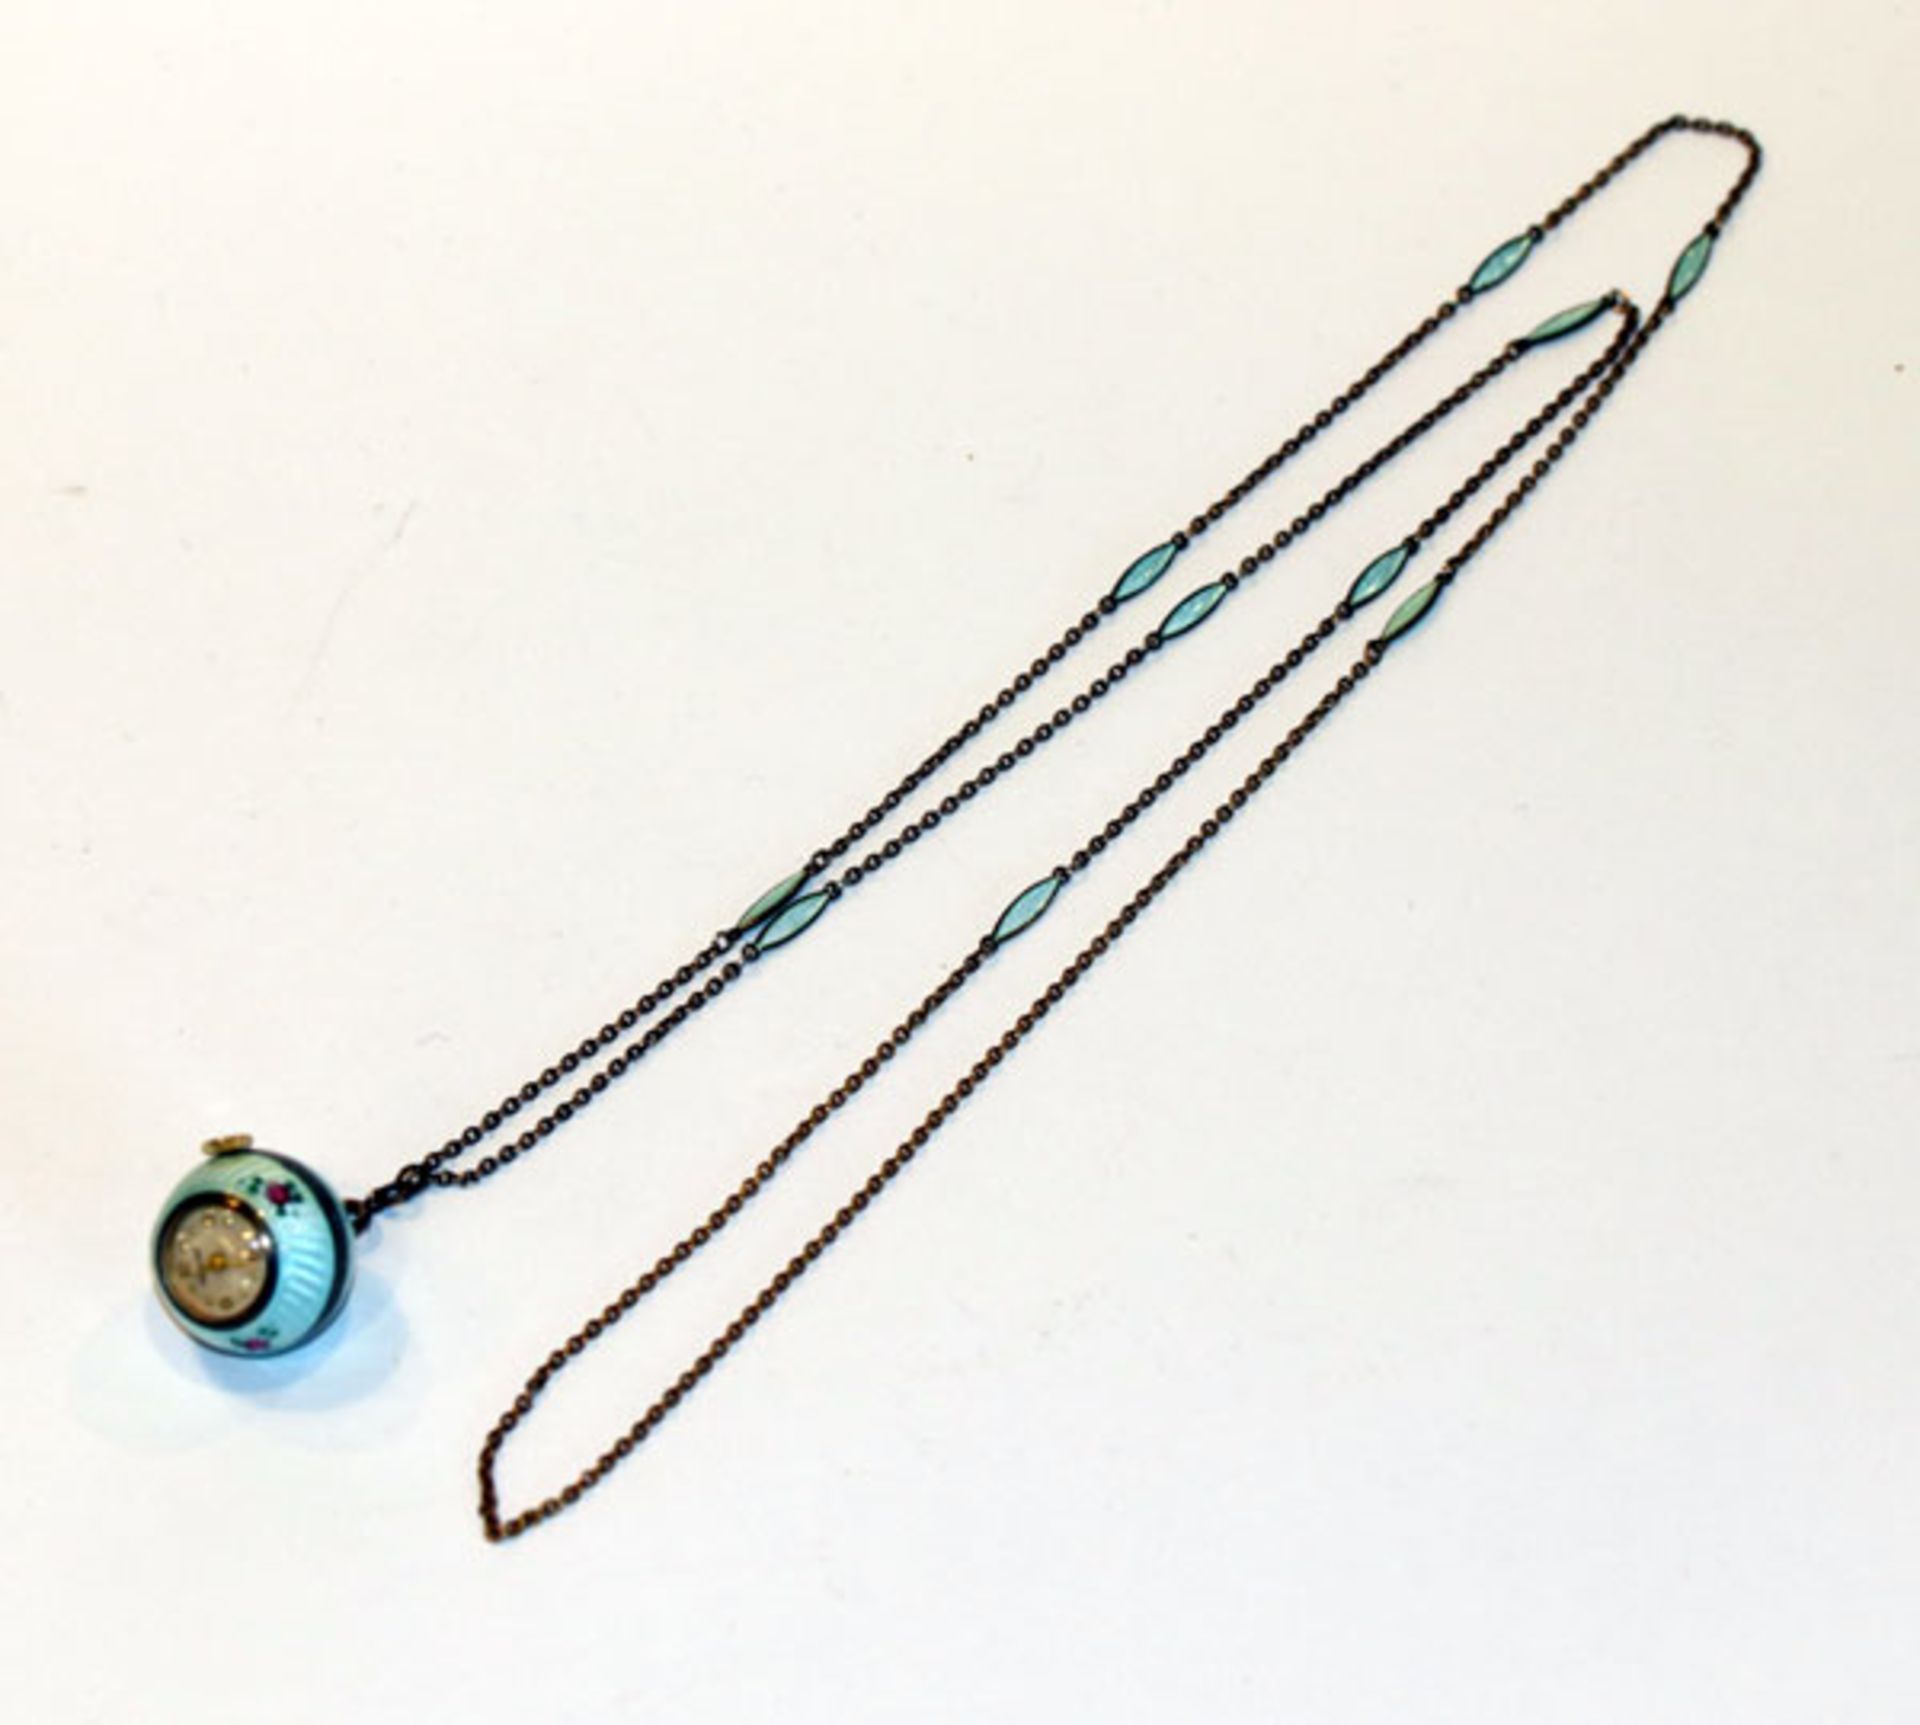 Silber Anhängeruhr, hellblau mit Rosendekor emailliert, intakt, an passender Kette, L 82 cm